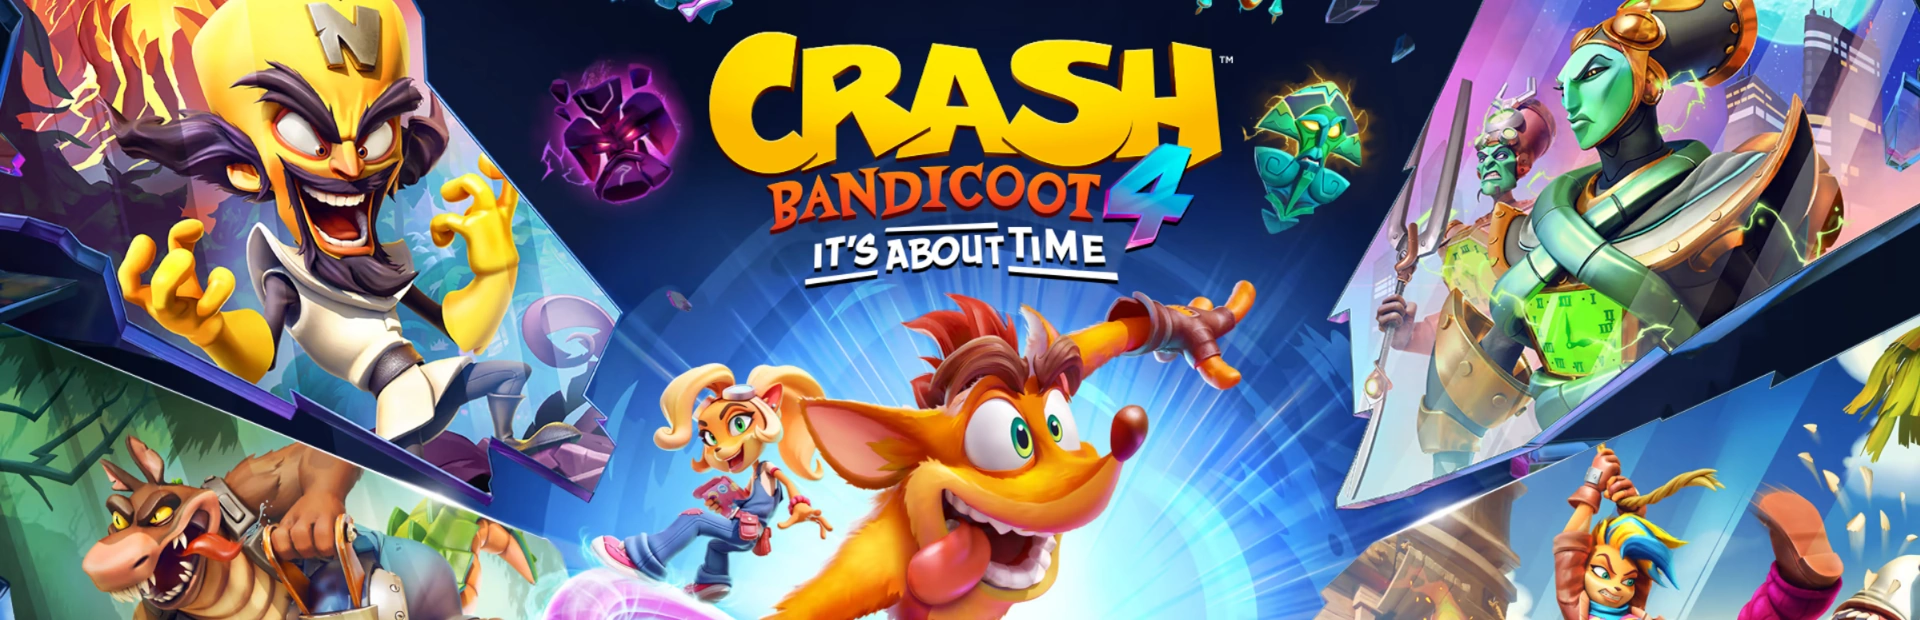 دانلود بازی Crash Bandicoot 4: It’s About Time برای PC | گیمباتو